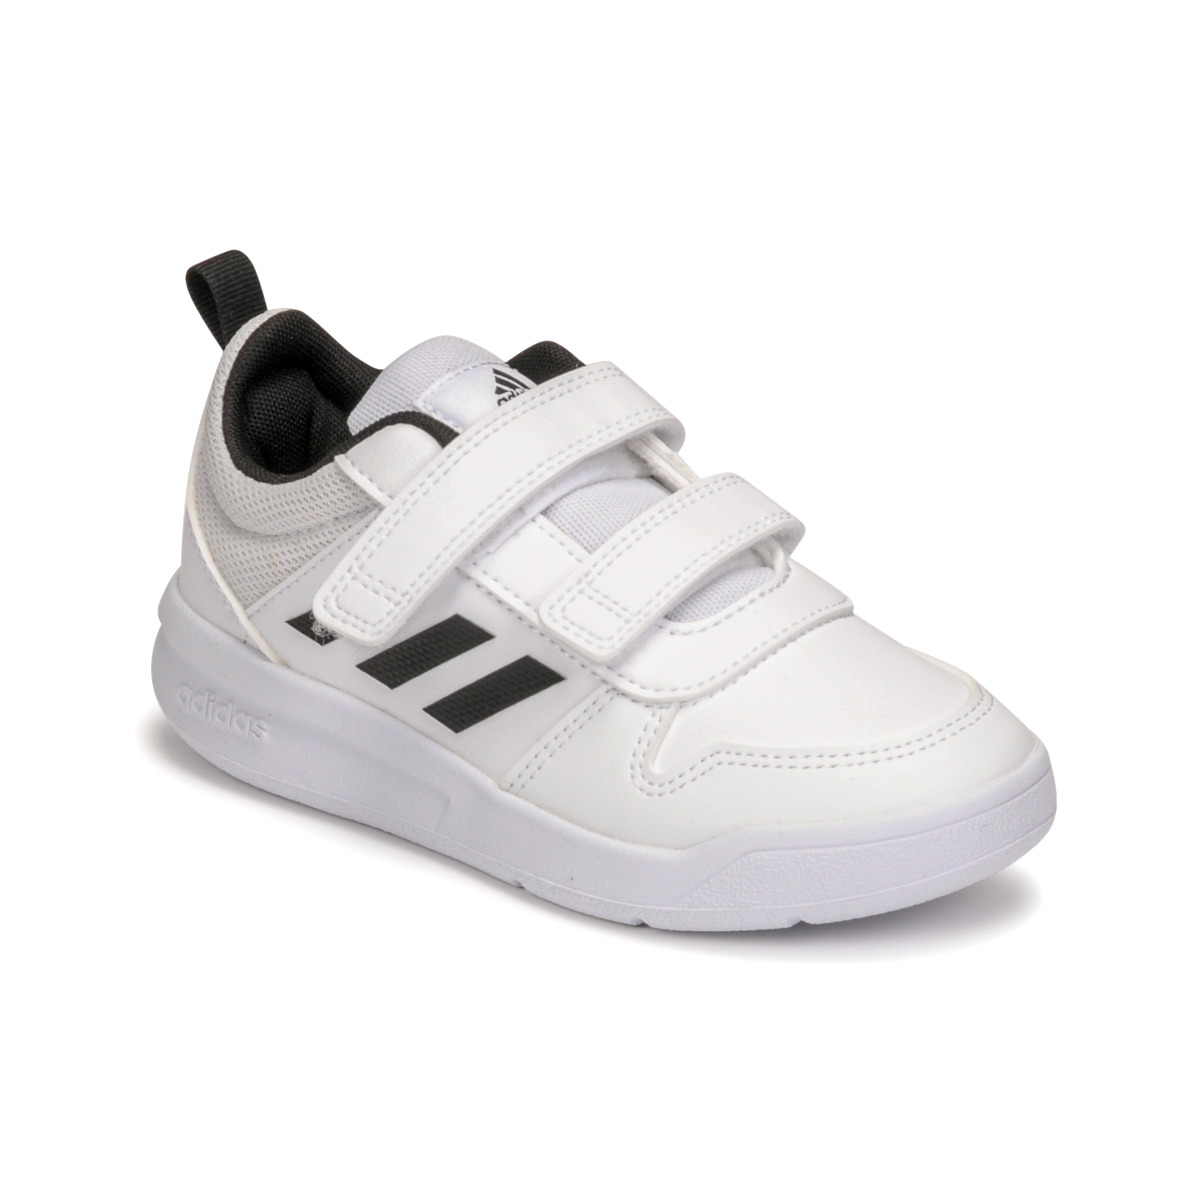 Sapatos Criança Sapatilhas adidas Performance TENSAUR C Branco / Preto